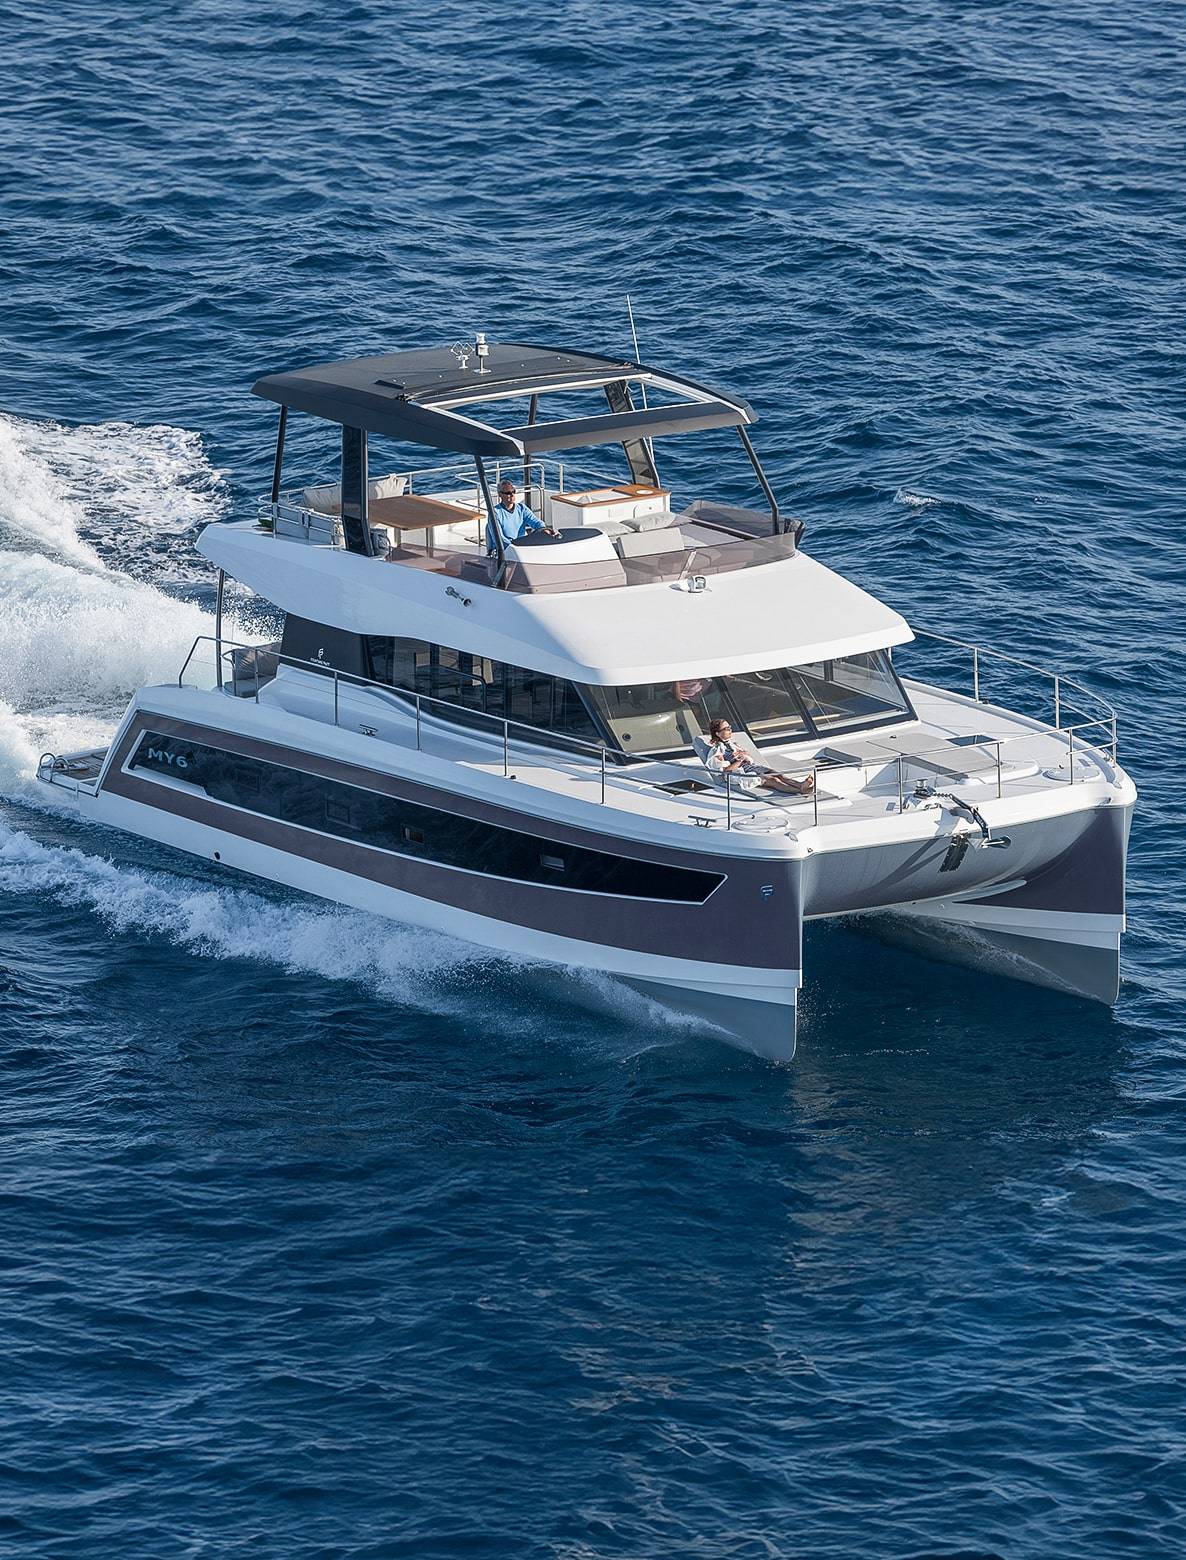 fountaine-pajot-motor-yachts-catamaran-my6-running